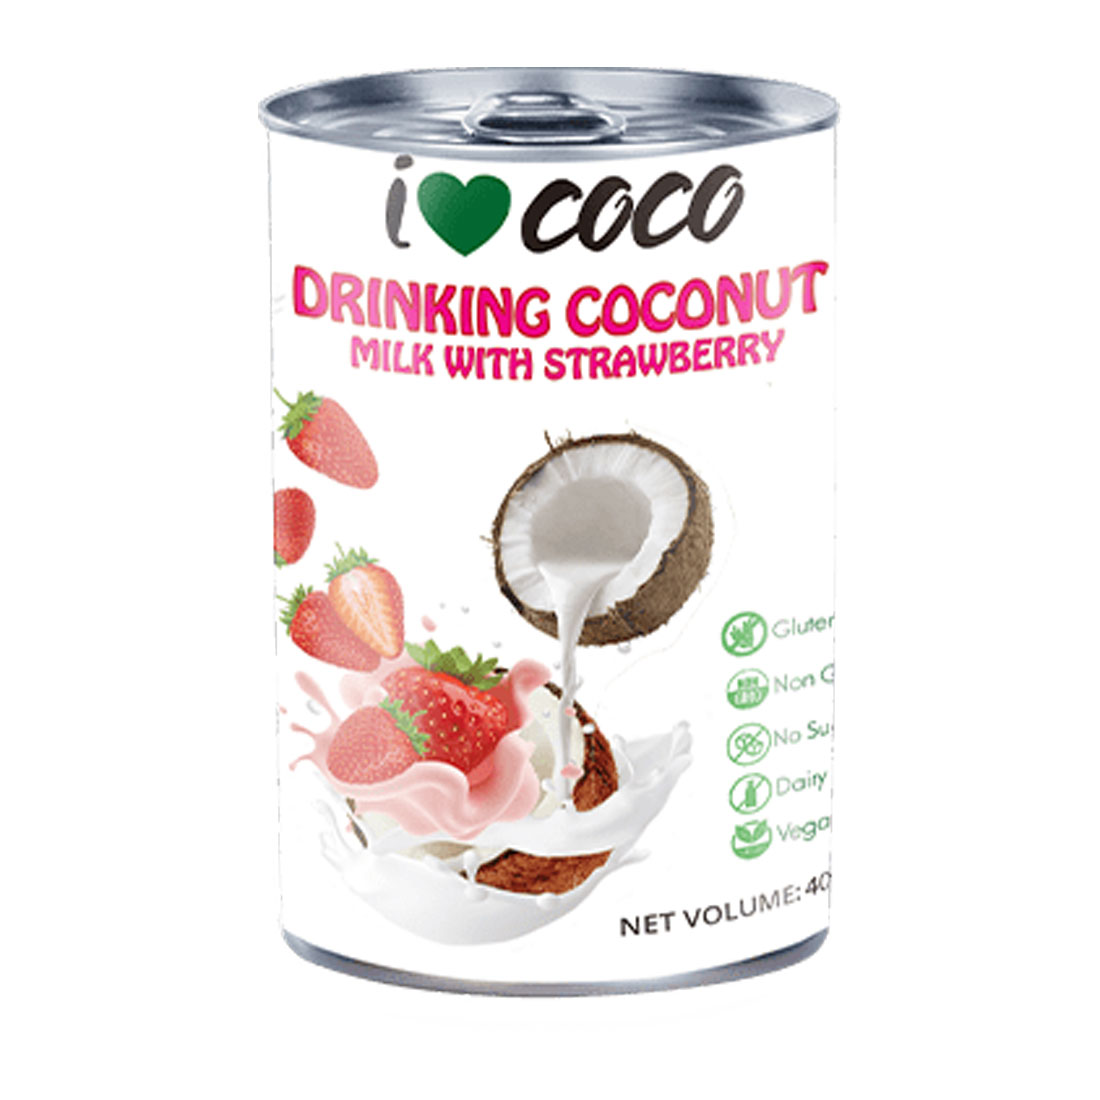 I Love Coco - Drinking Coconut Milk Strawberry Flavor